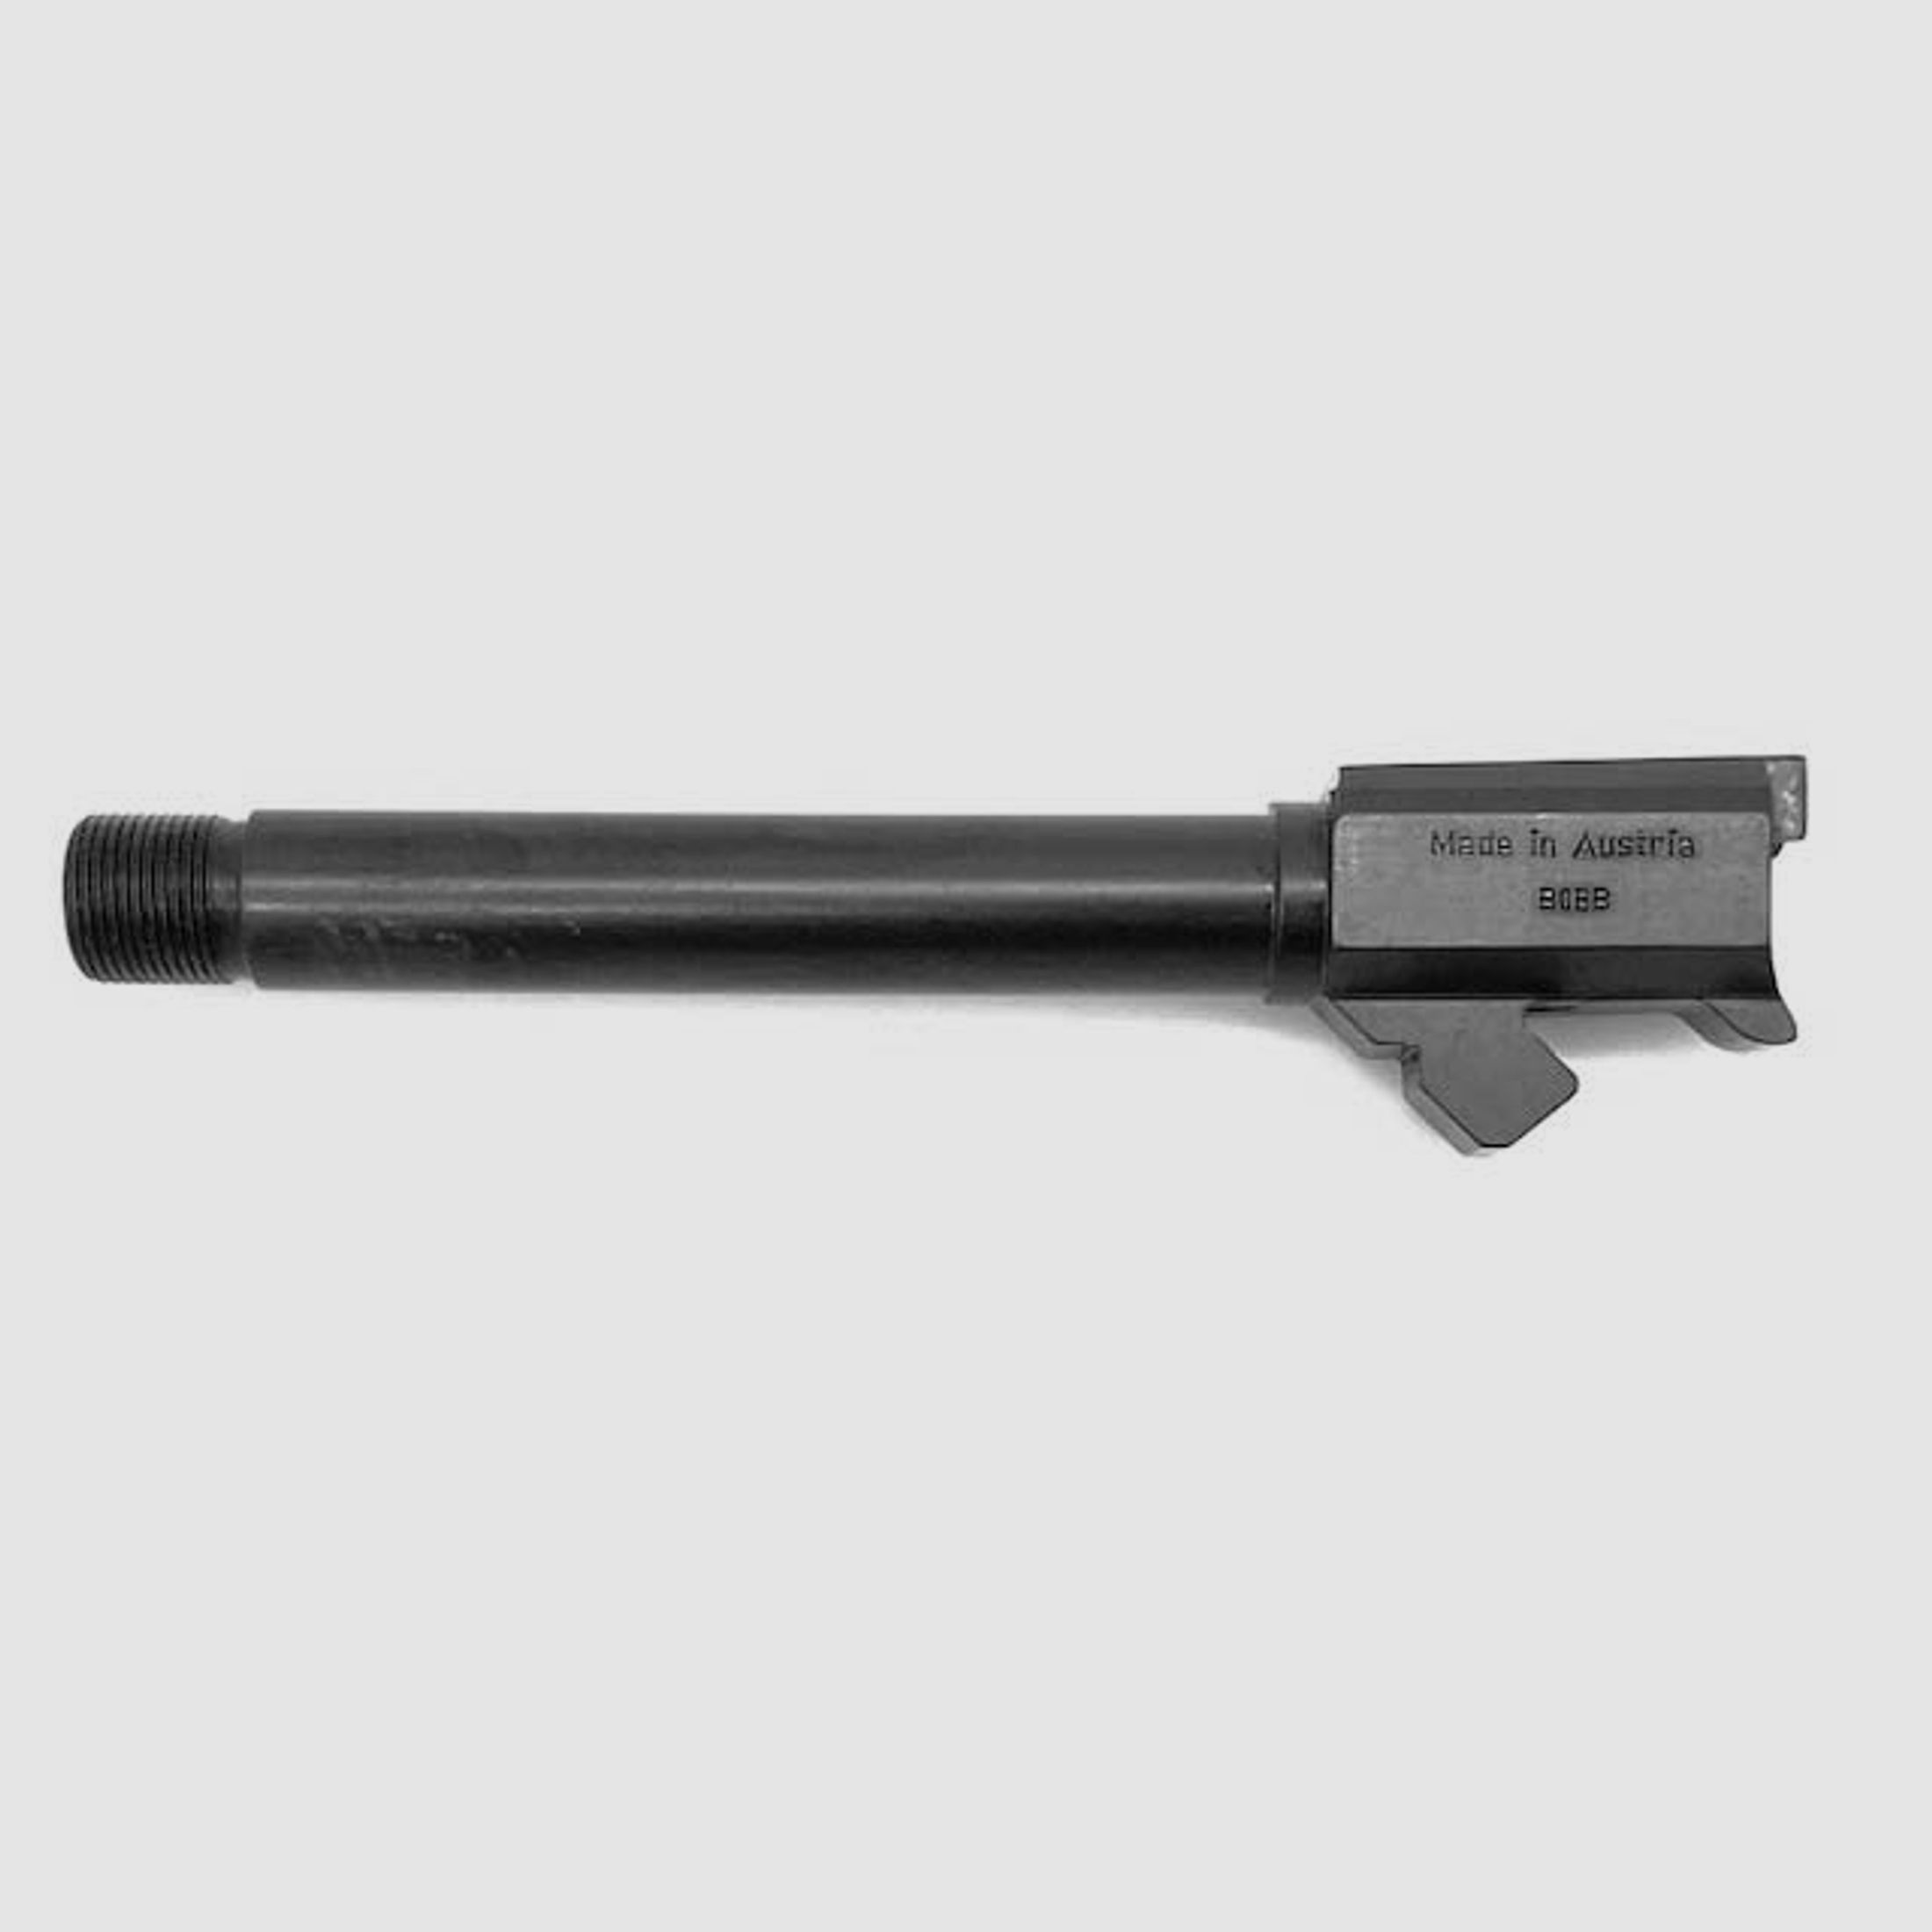 I G B Lauf f. Kurzwaffe f. SIG Sauer P226 -Gewinde 9mmLuger -1/2x28'